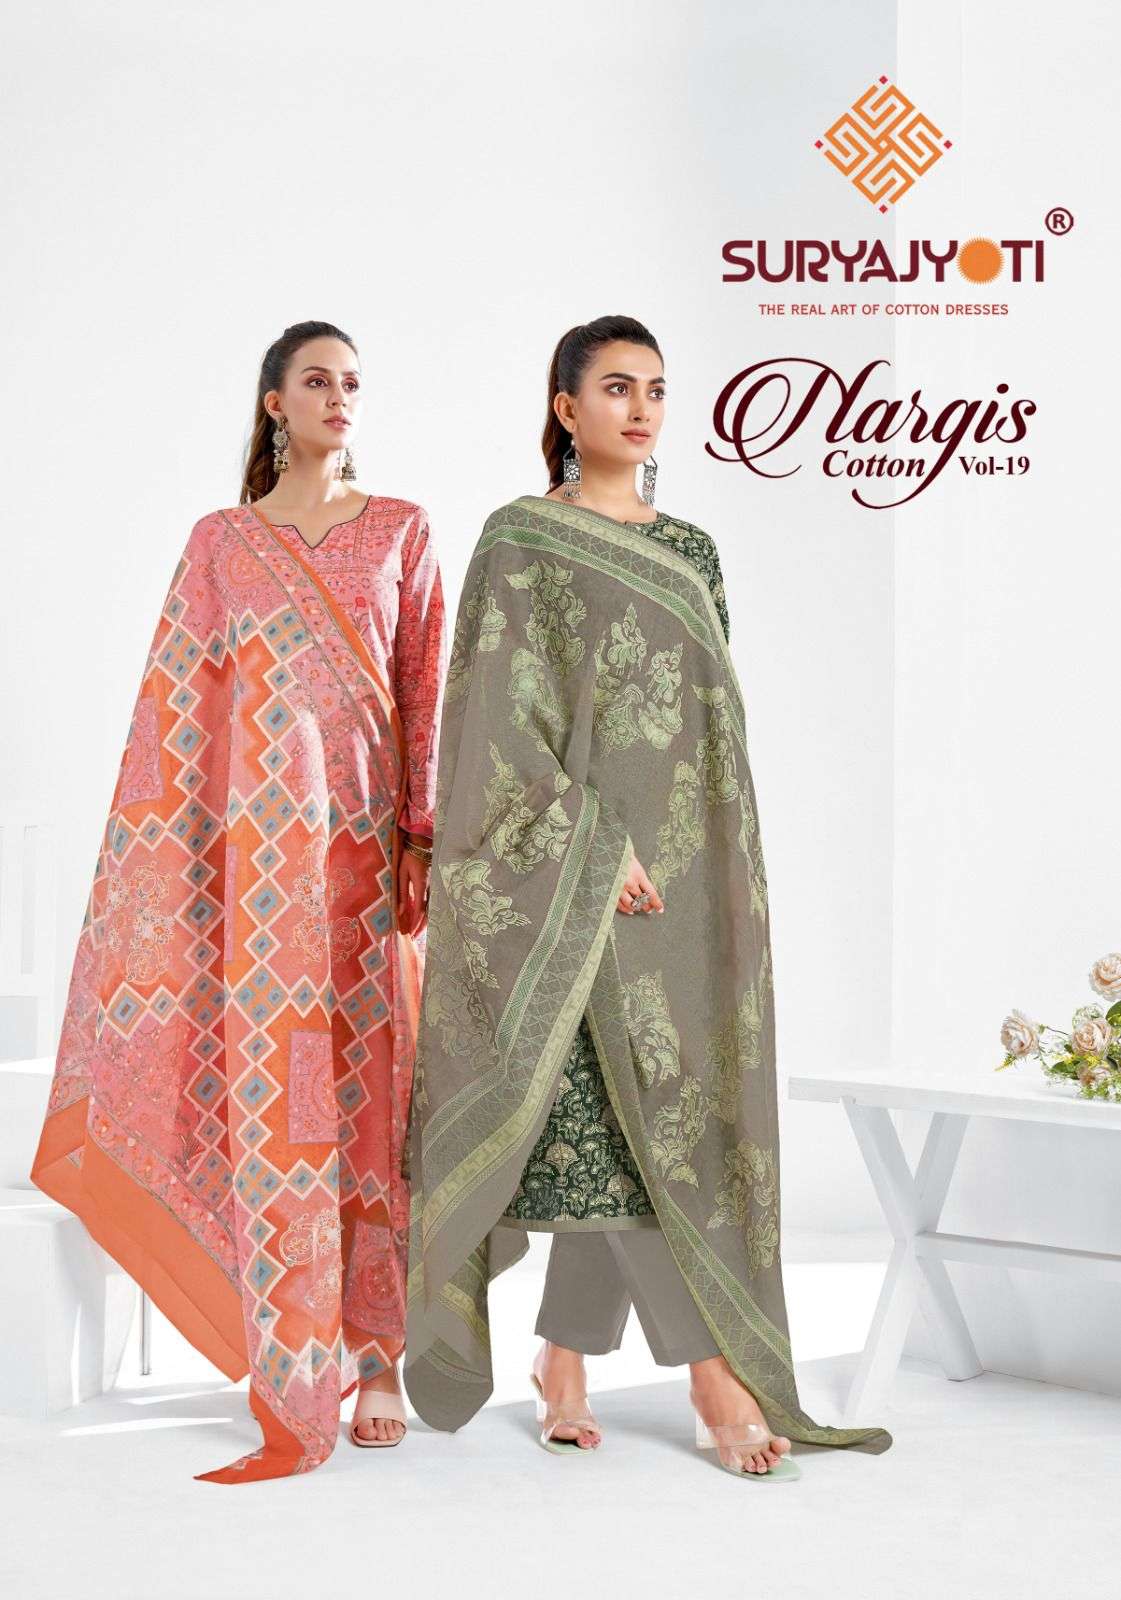 Suryajyoti Nargis Cotton Vol 19 Fancy Printed Pure Cotton Unstitch Suit Wholesaler